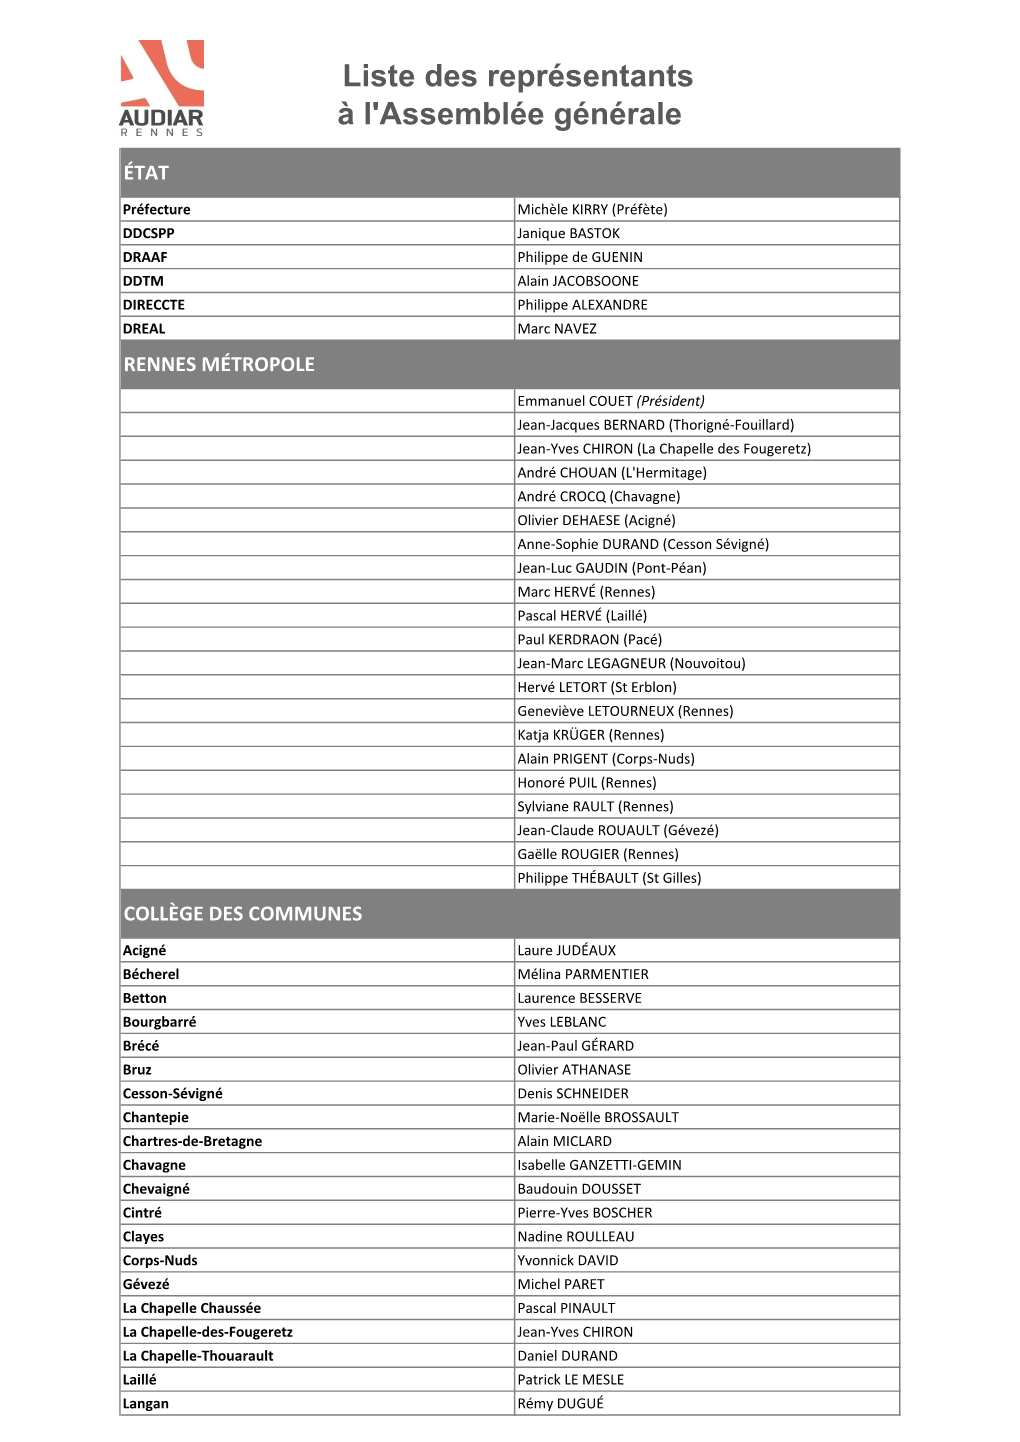 Liste Des Représentants À L'assemblée Générale